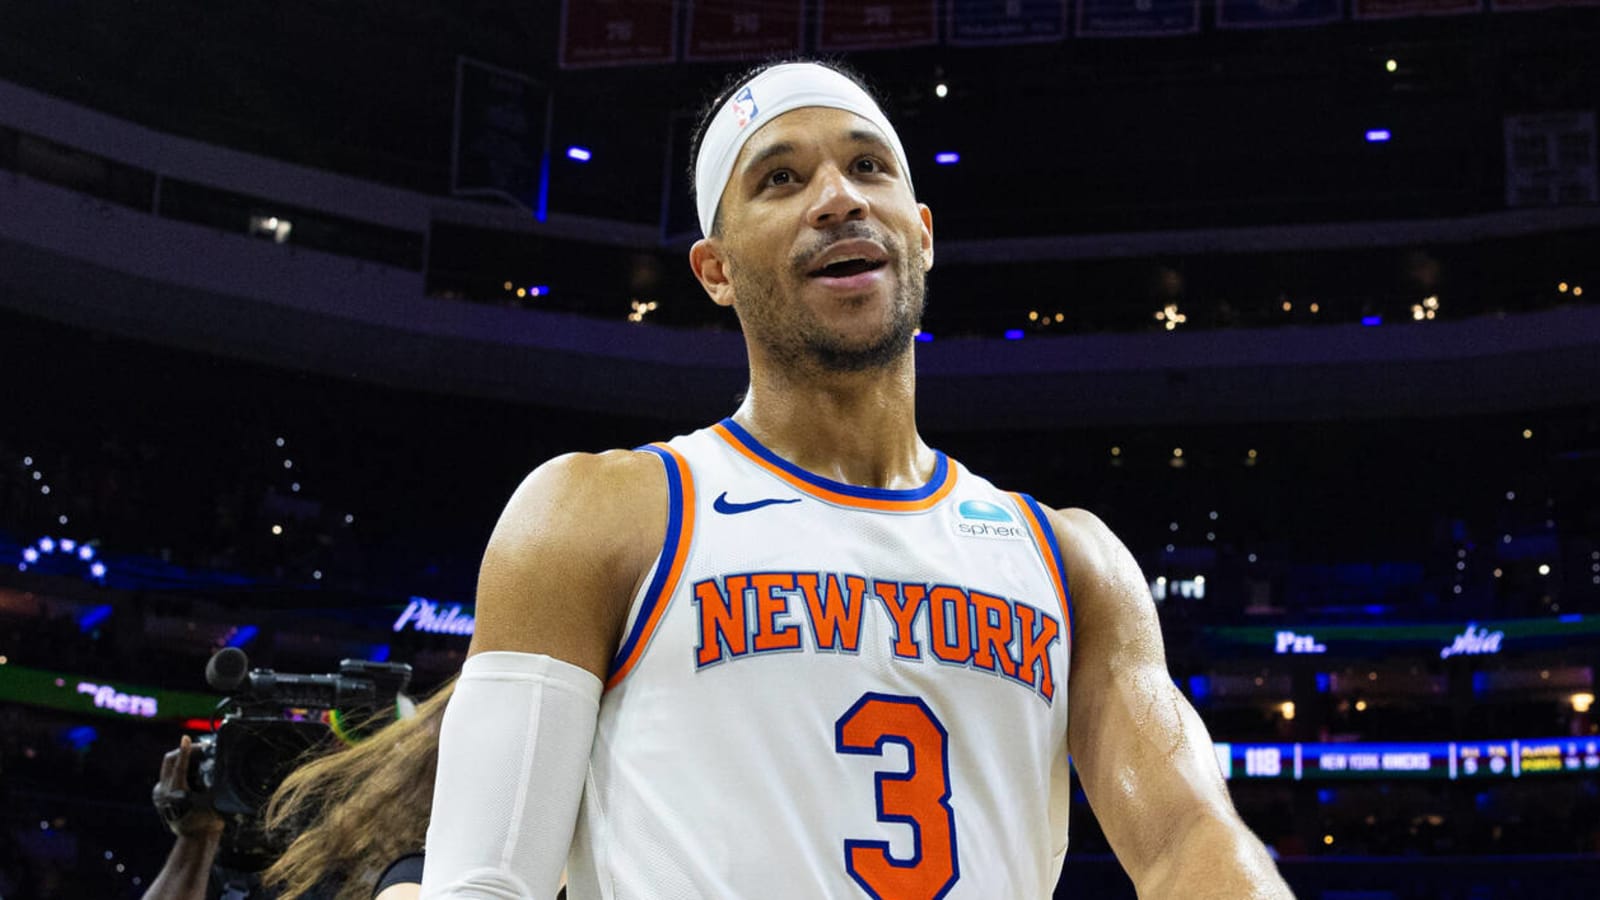 NBA insider provides major injury update on Knicks star